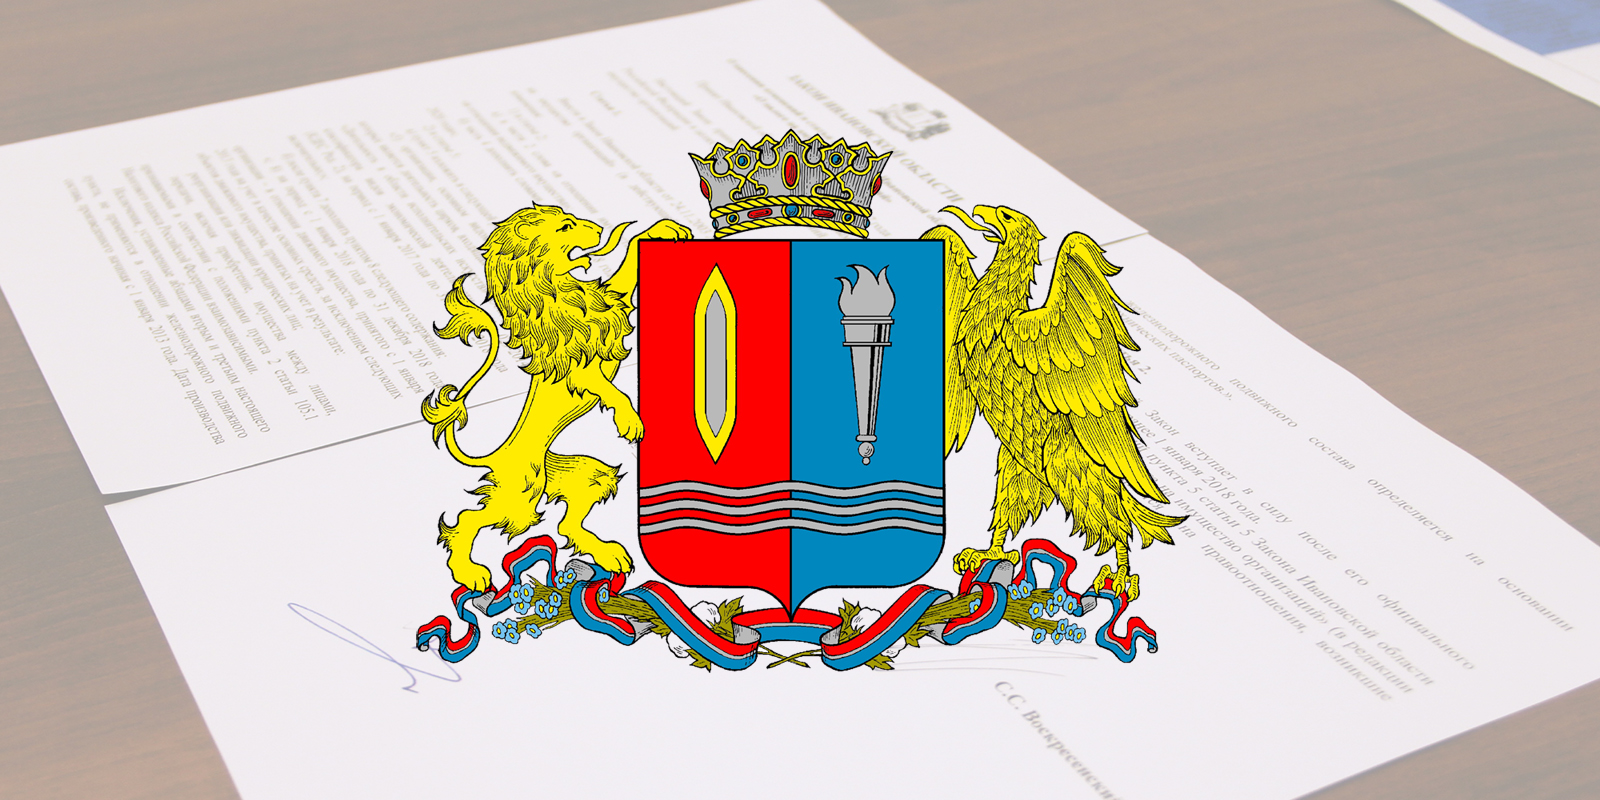 Назначен новый руководитель департамента дорожного хозяйства и транспорта Ивановской области